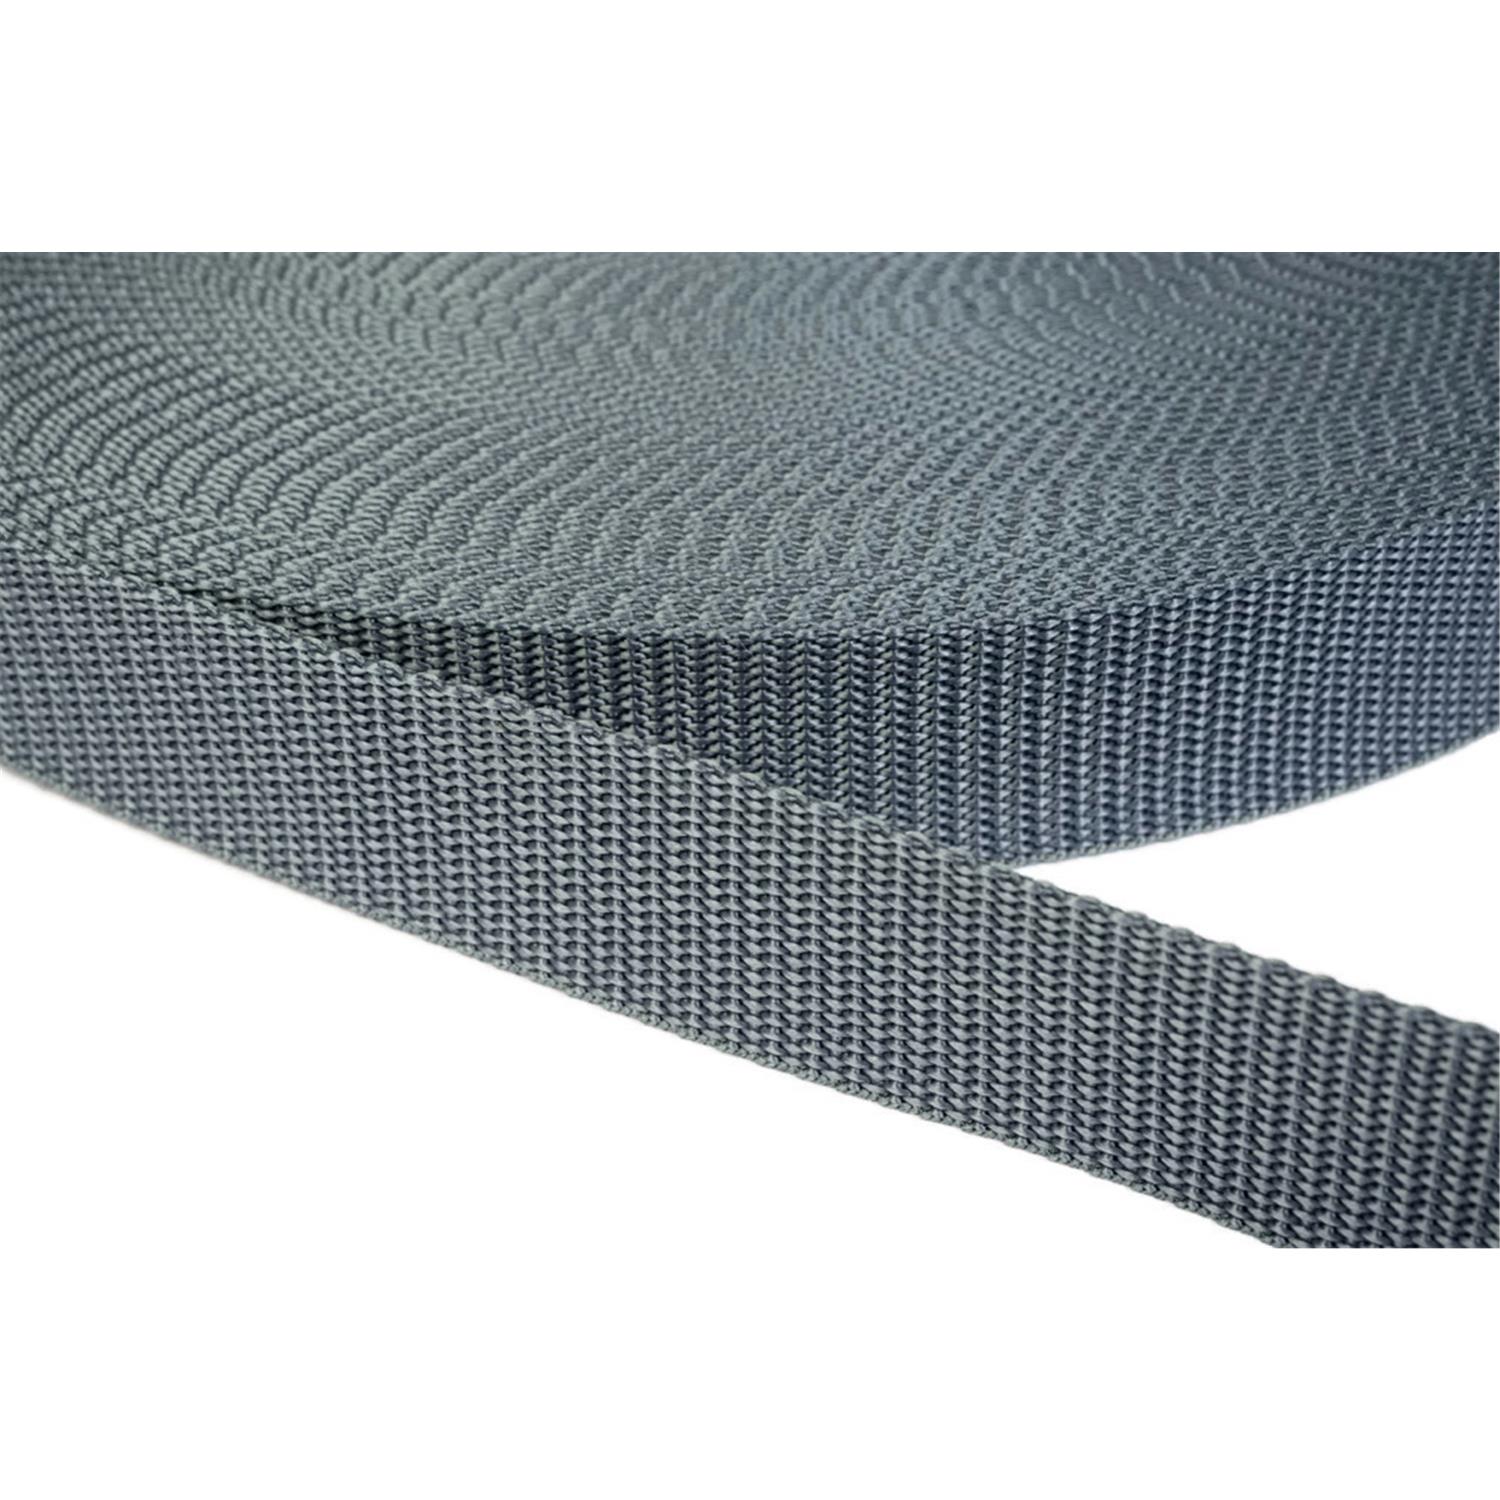 Gurtband 50mm breit aus Polypropylen in 41 Farben 38 - mittelgrau 6 Meter